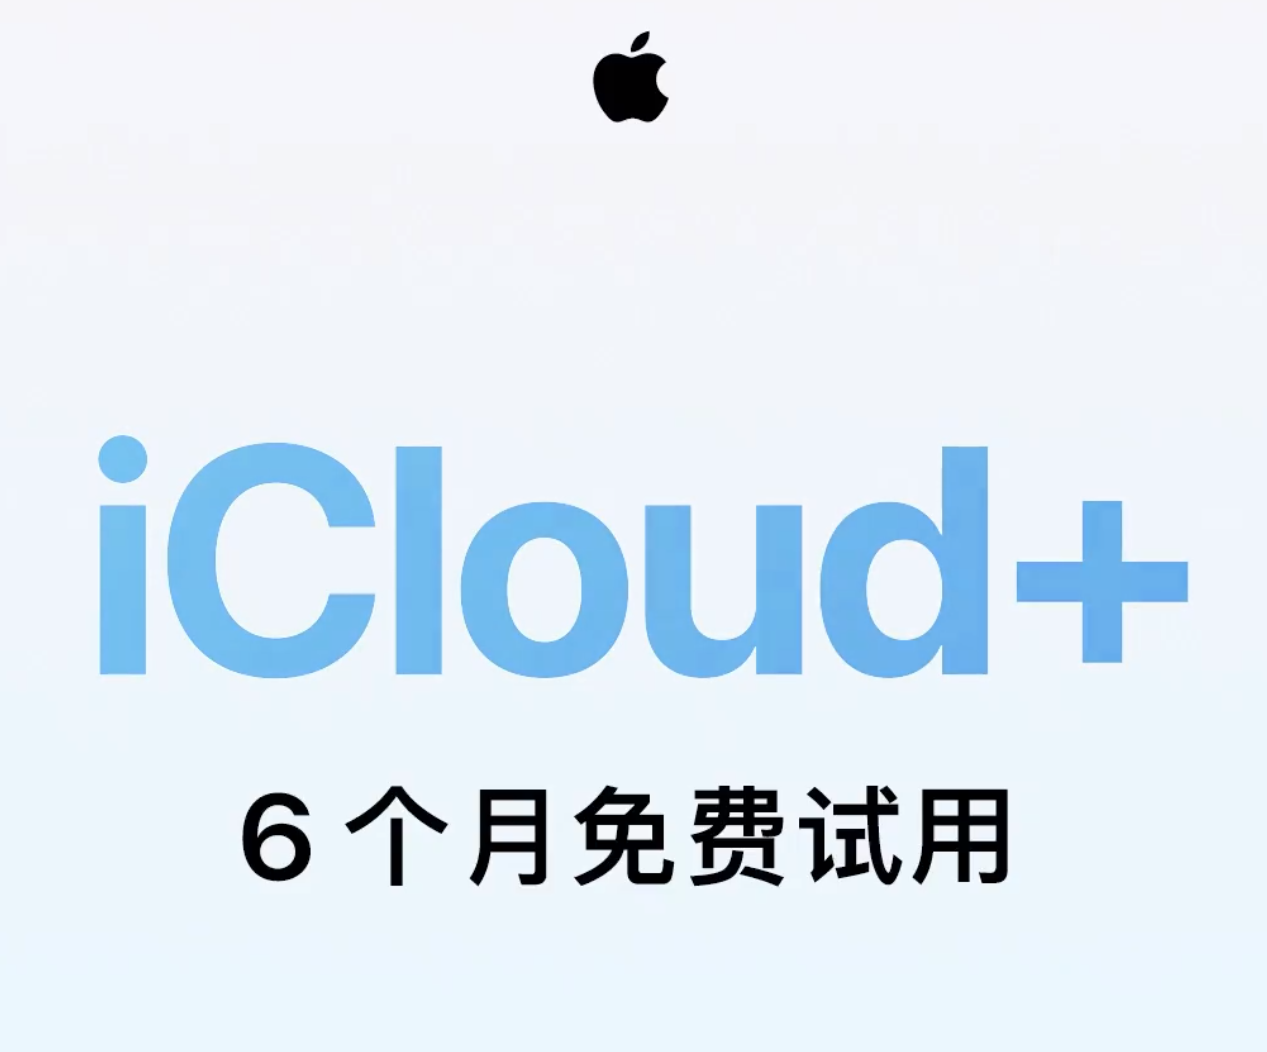 苹果官宣新激活的 iPhone 可享受 iCloud+  6 个月免费试用，如何参加？